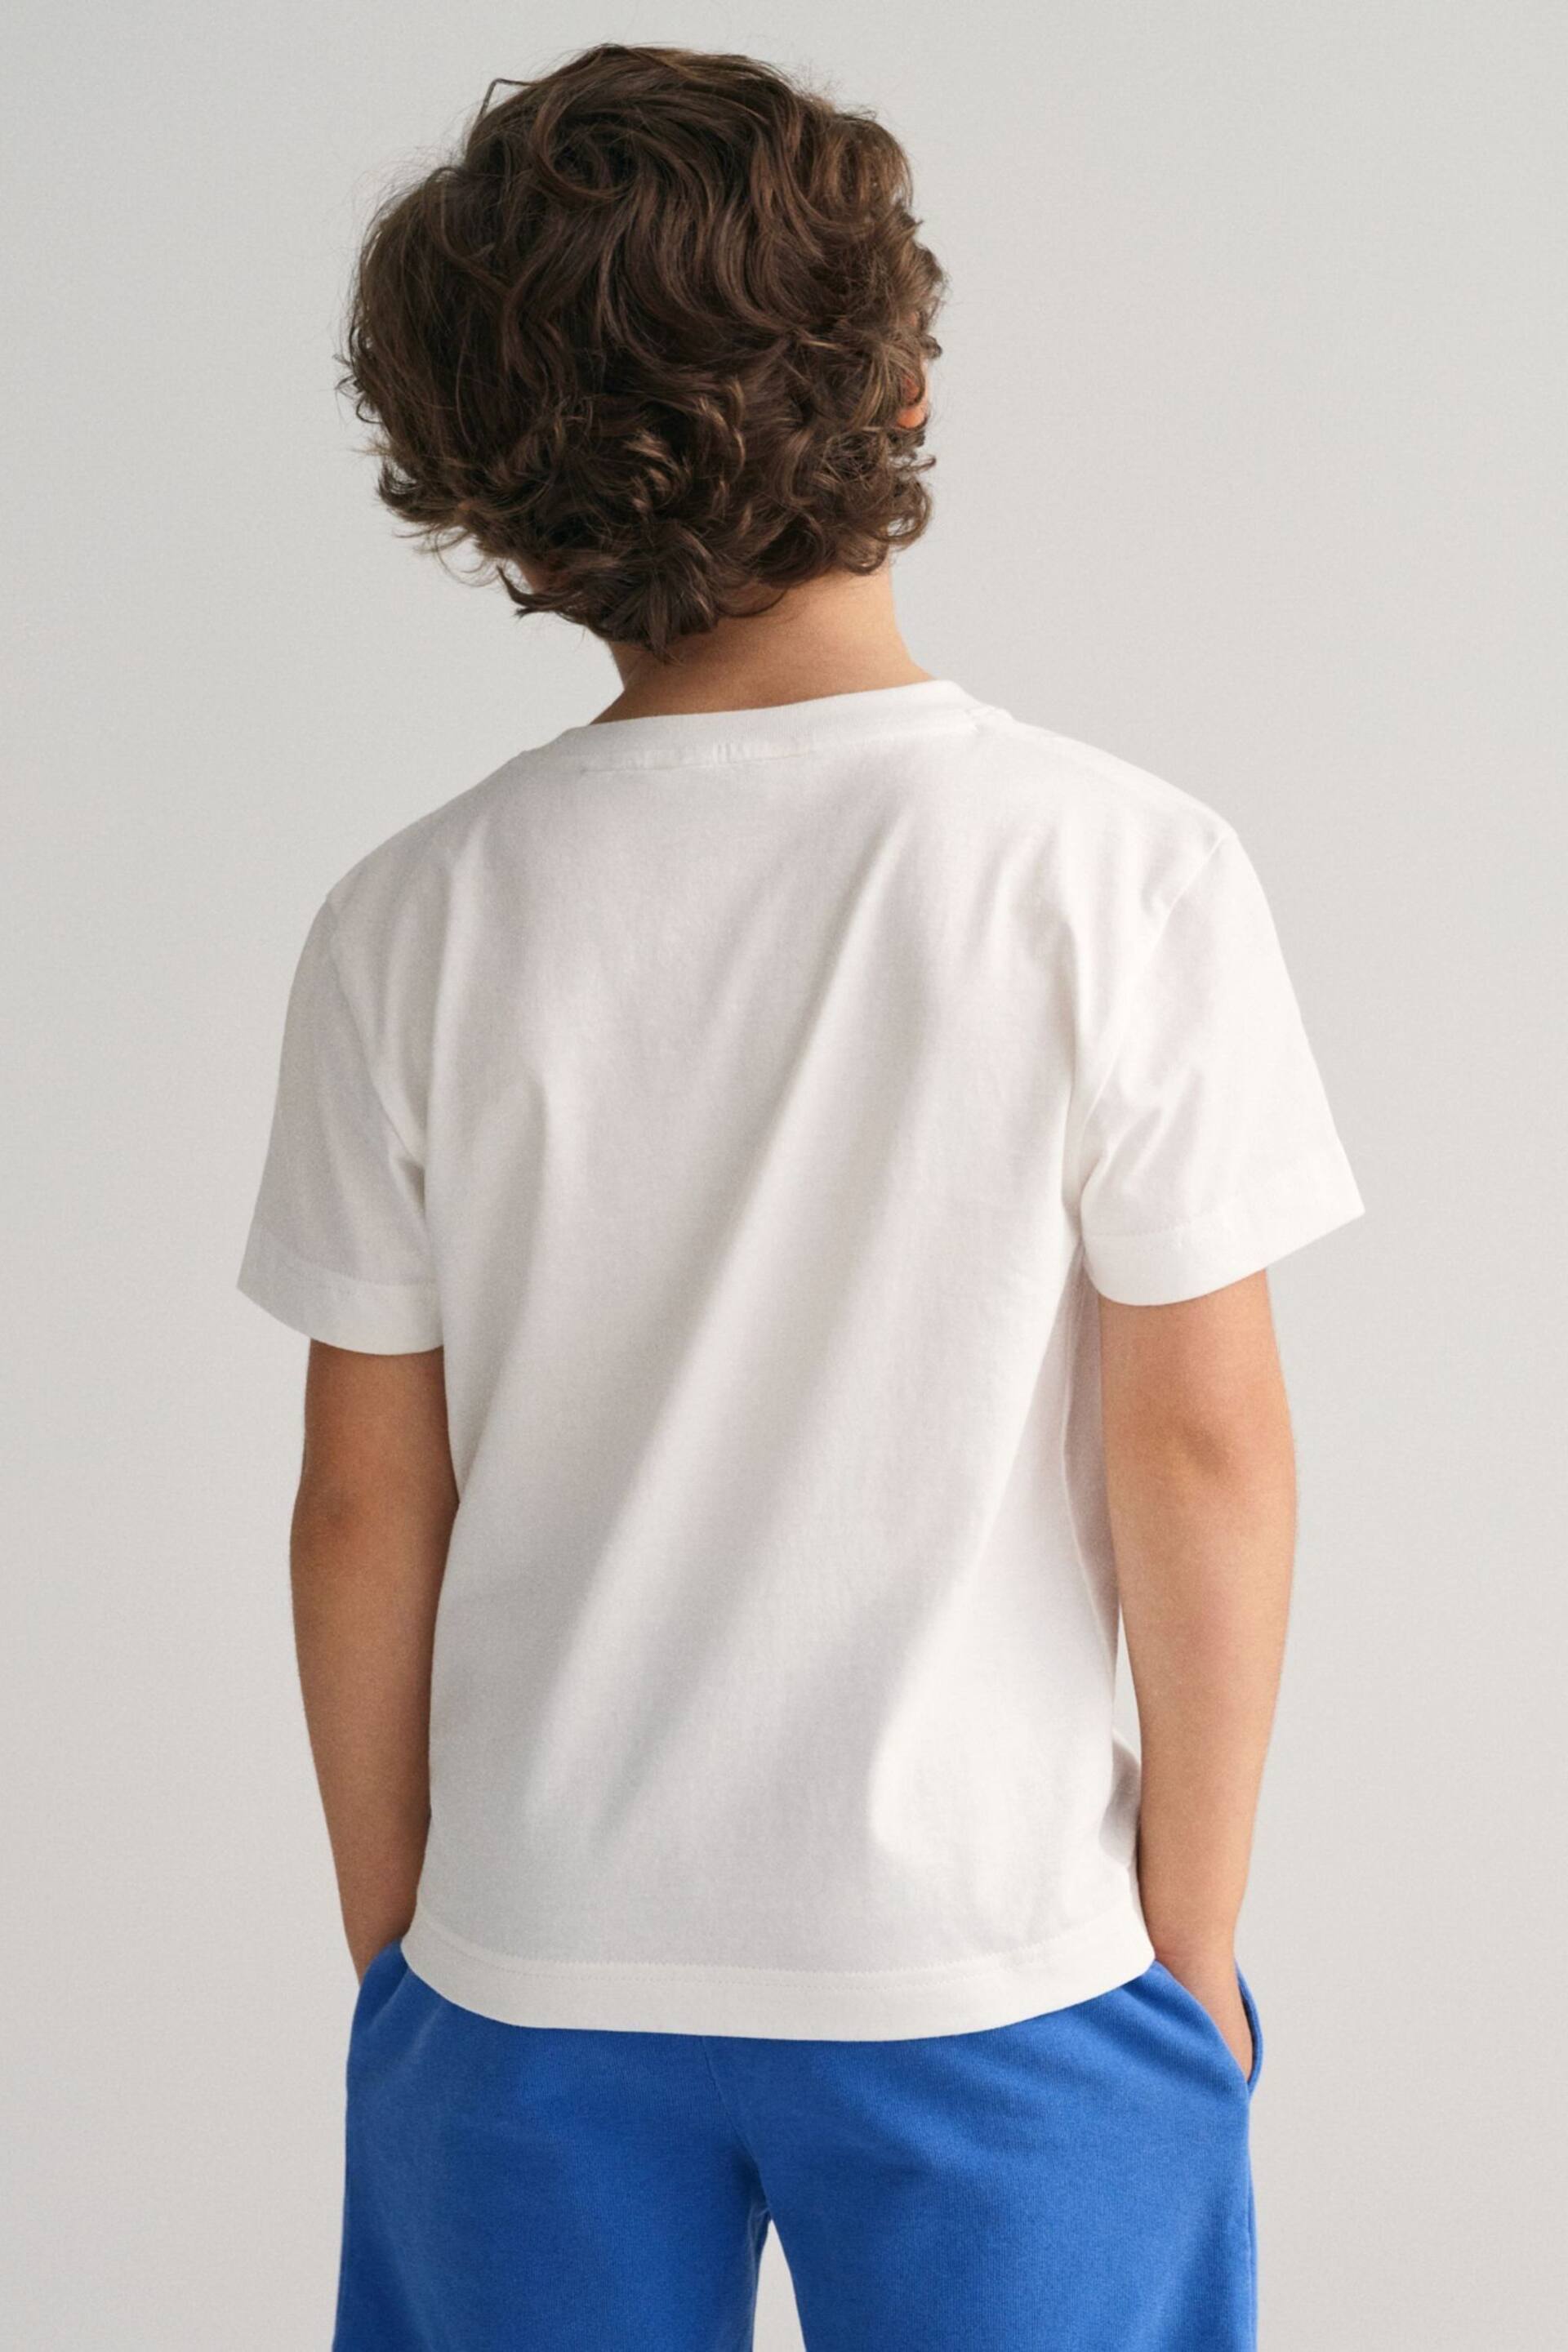 GANT Boys Resort White T-Shirt - Image 2 of 4